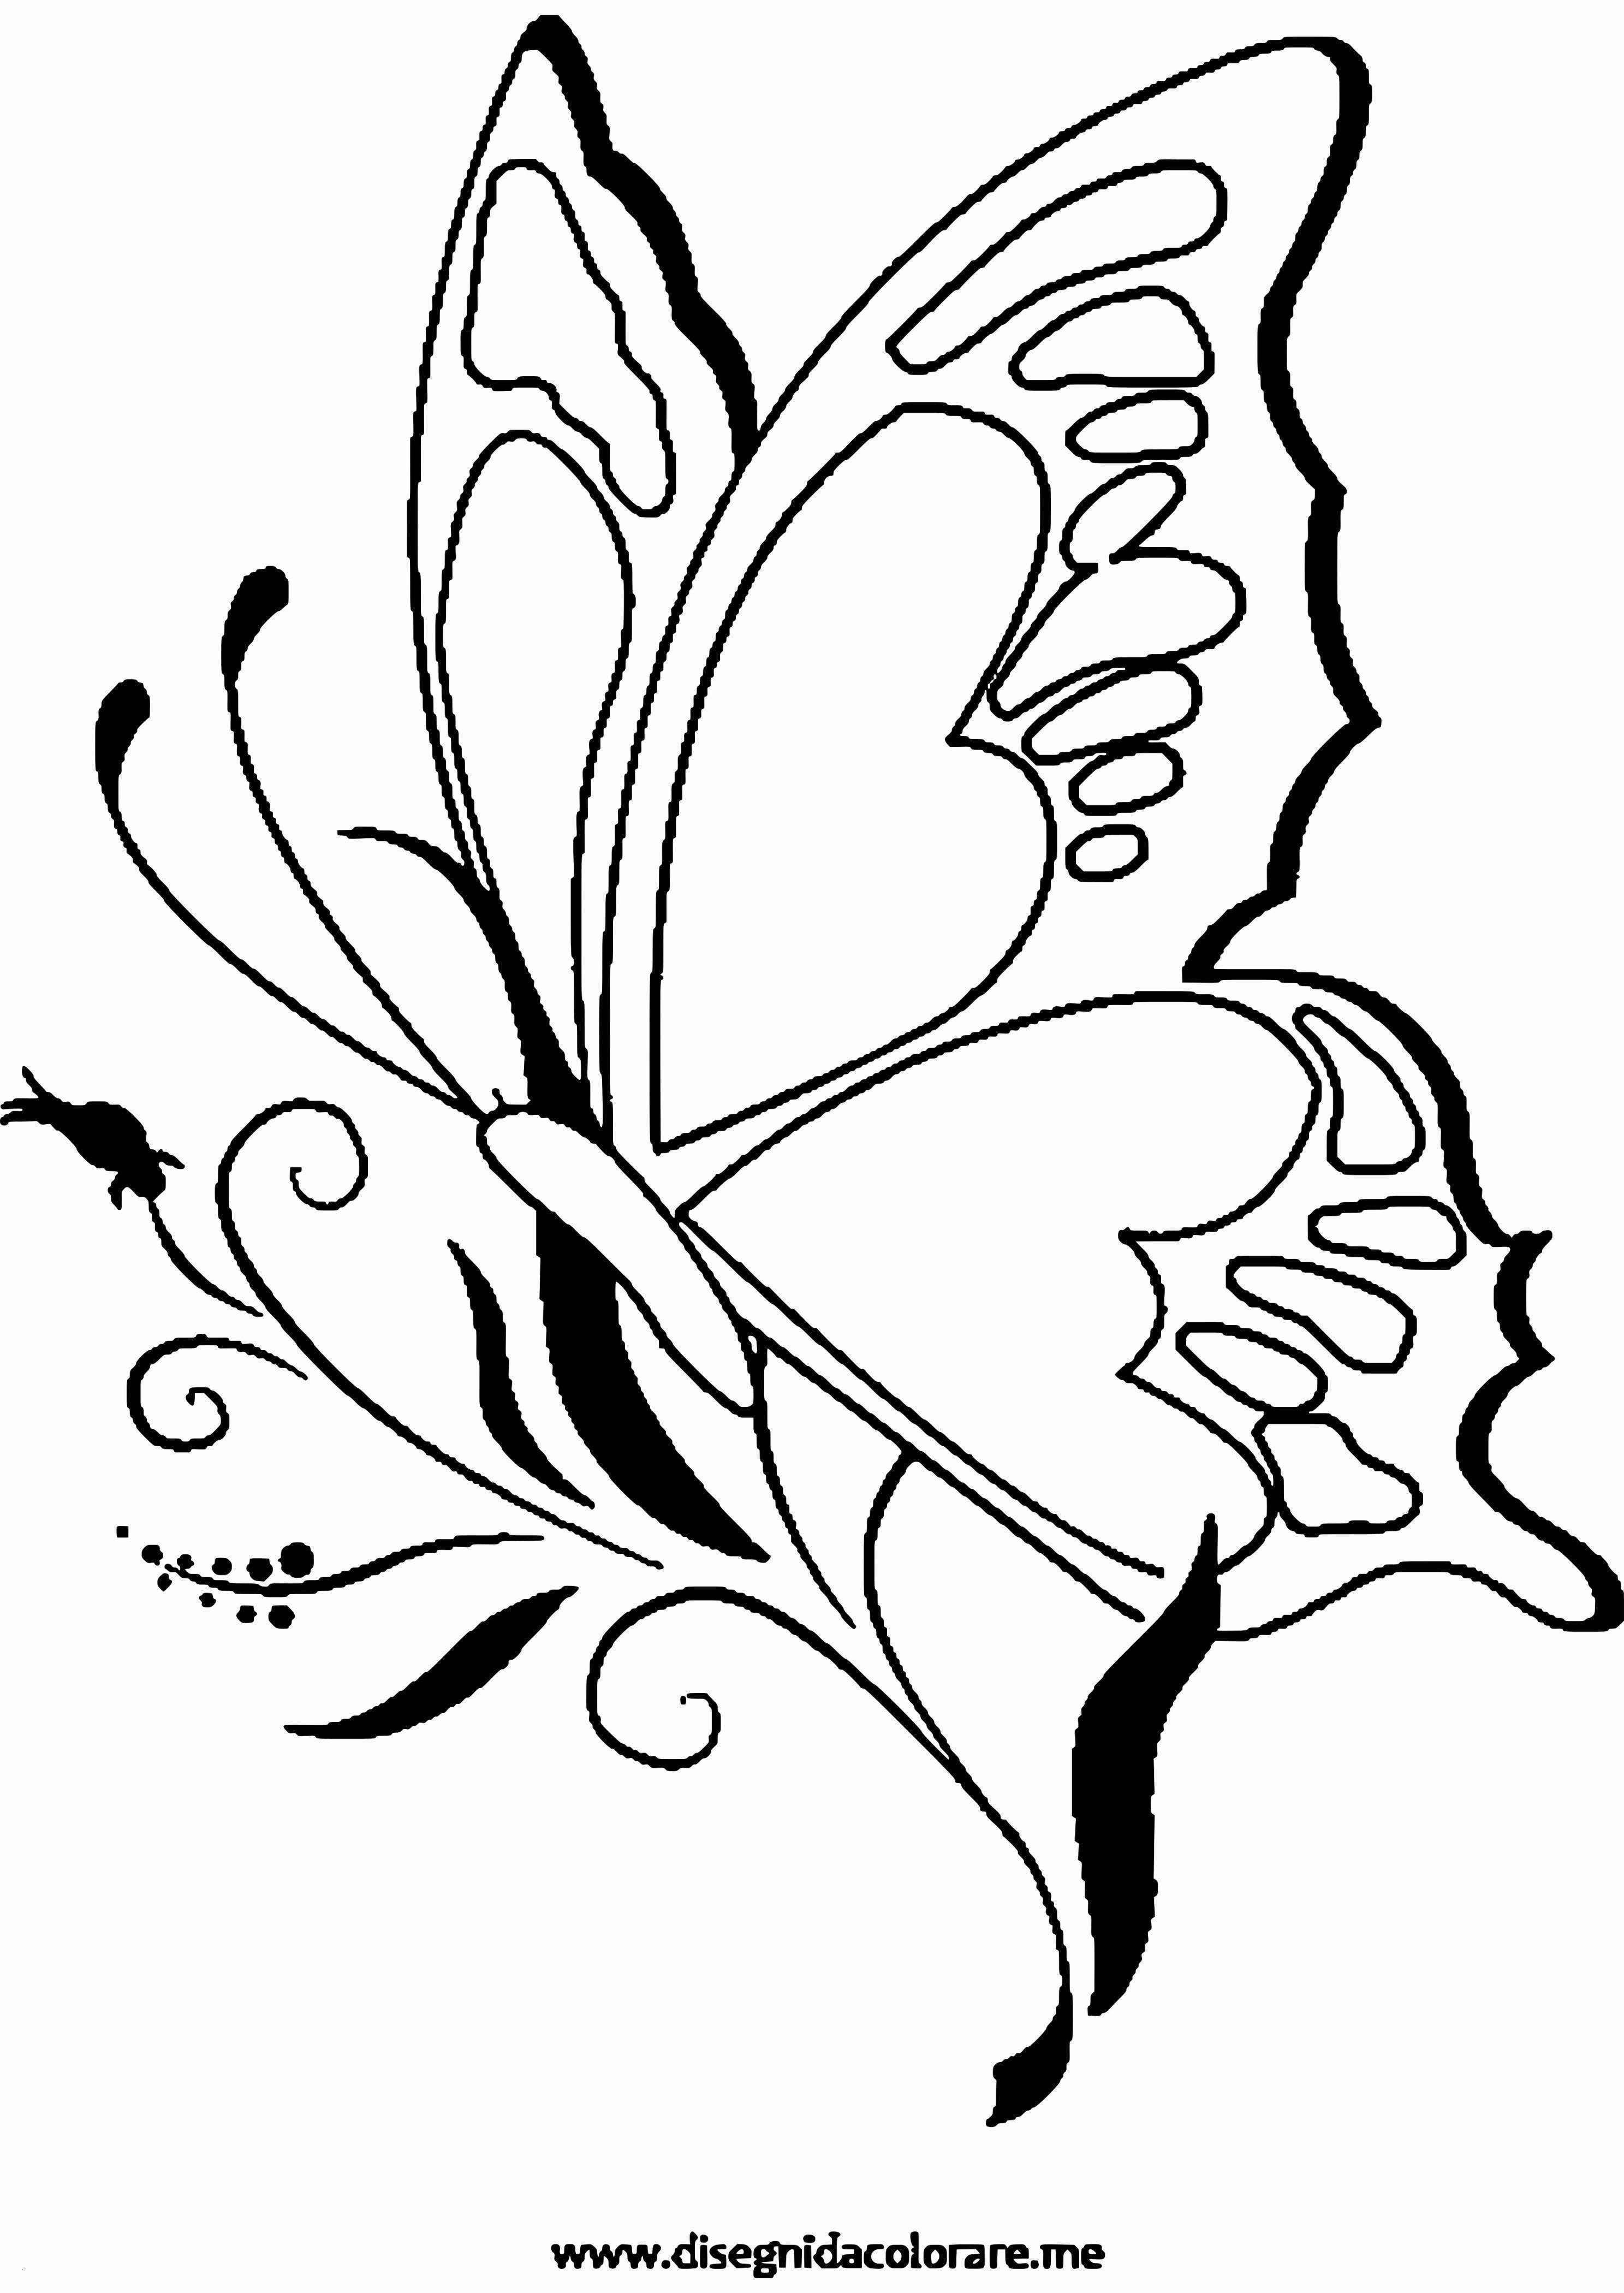 52 Einzigartig Ausmalbilder Schmetterling Kostenlos Ausdrucken Ausmalbilder Schmetterling Kostenlos Ausdrucken Malvorlagen Malvorlagen Blumen Ausmalbilder